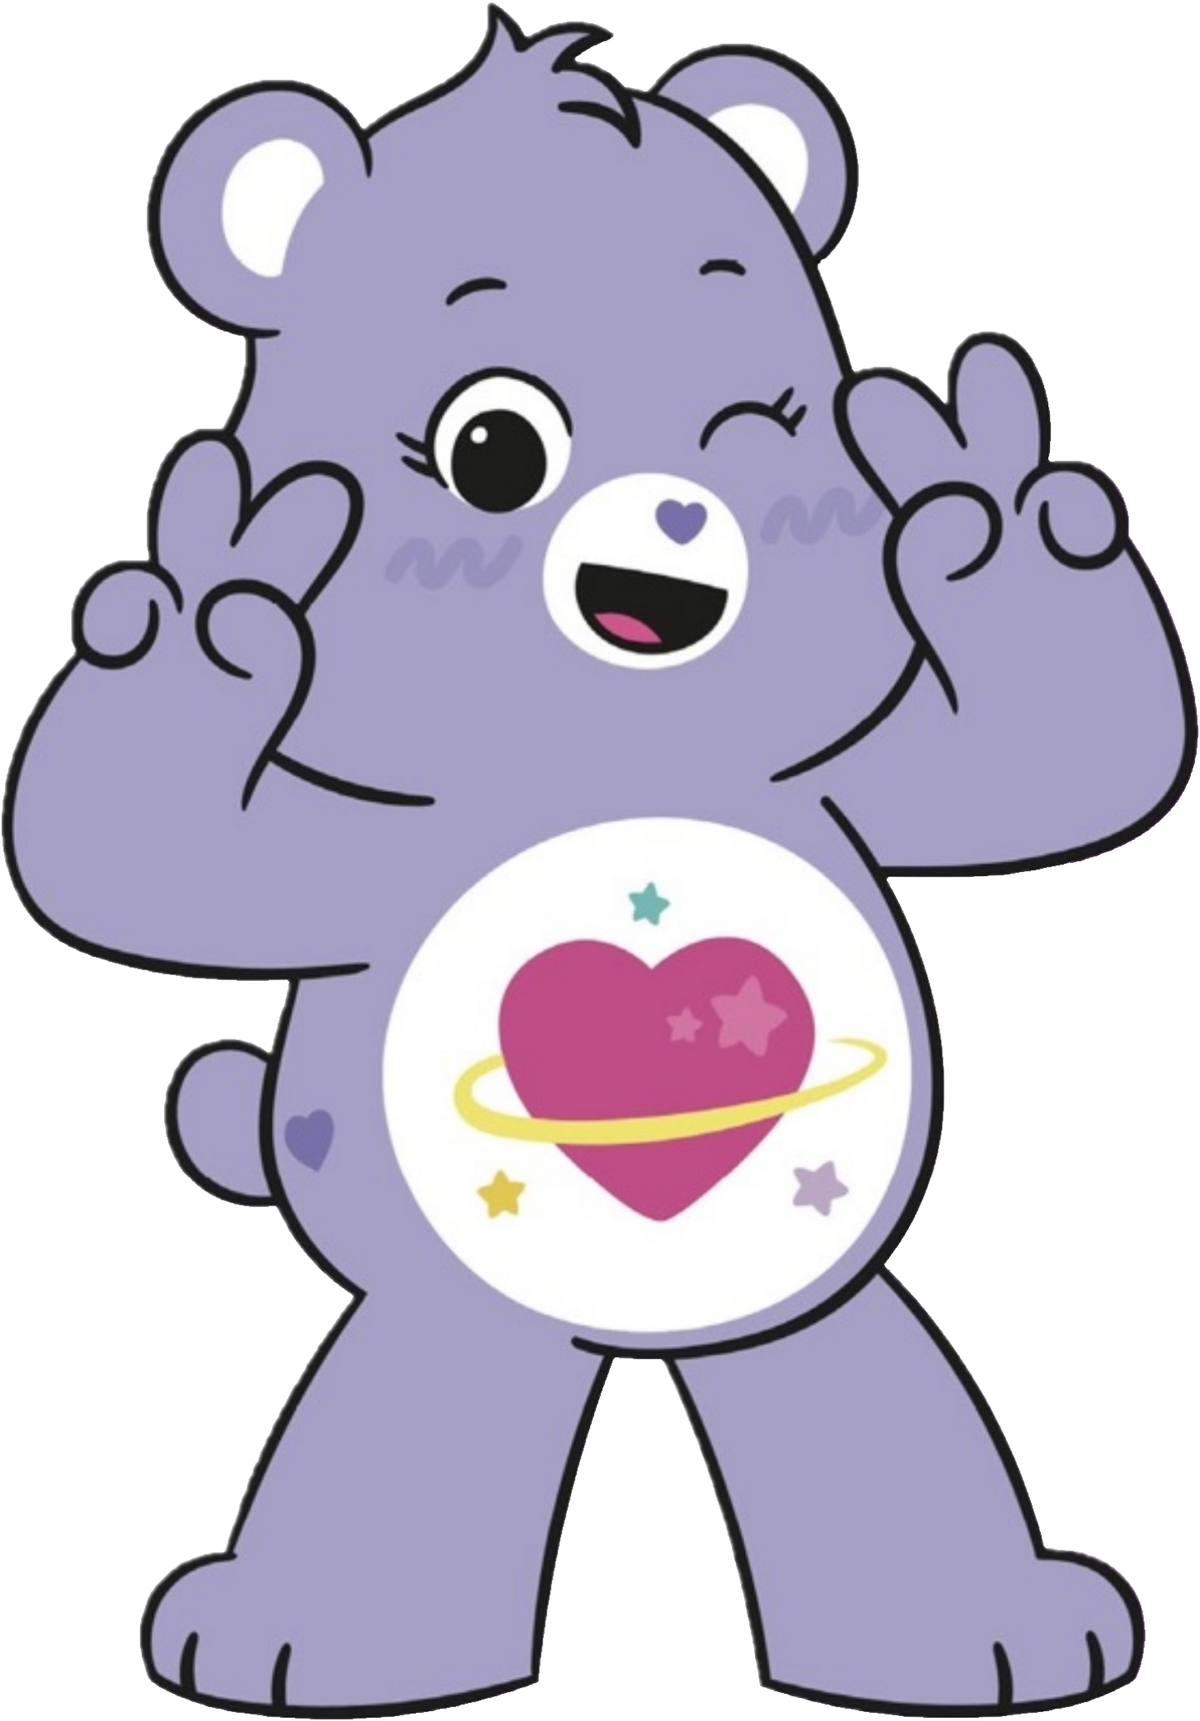 Daydream bear care bear wiki